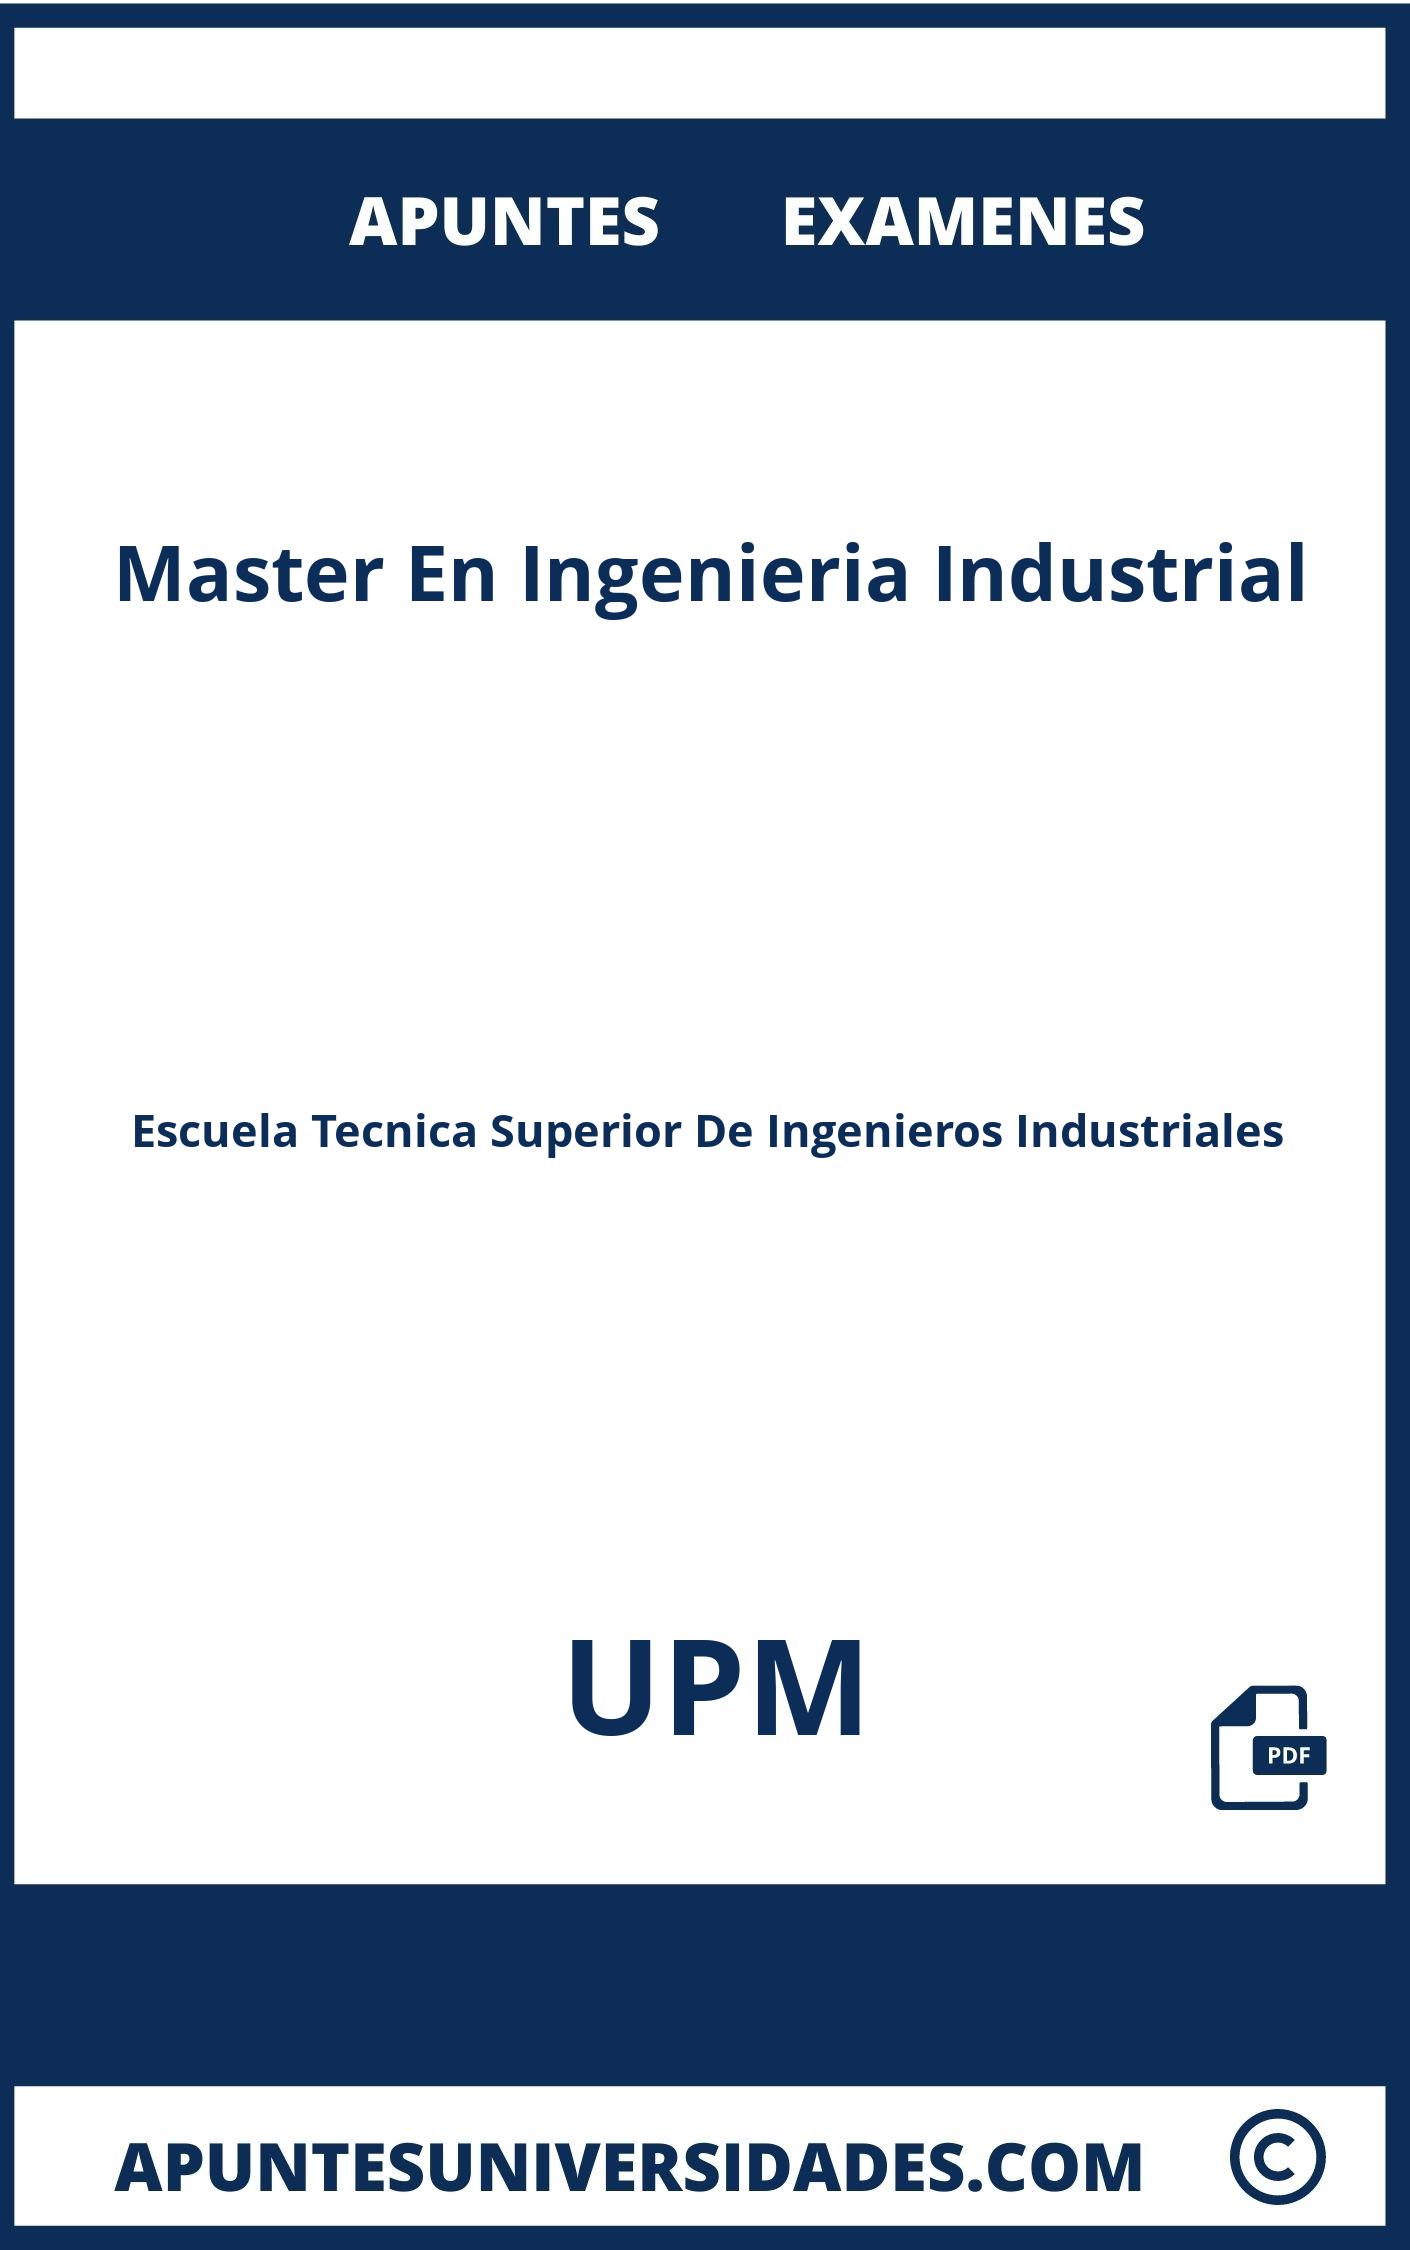 Apuntes y Examenes Master En Ingenieria Industrial UPM